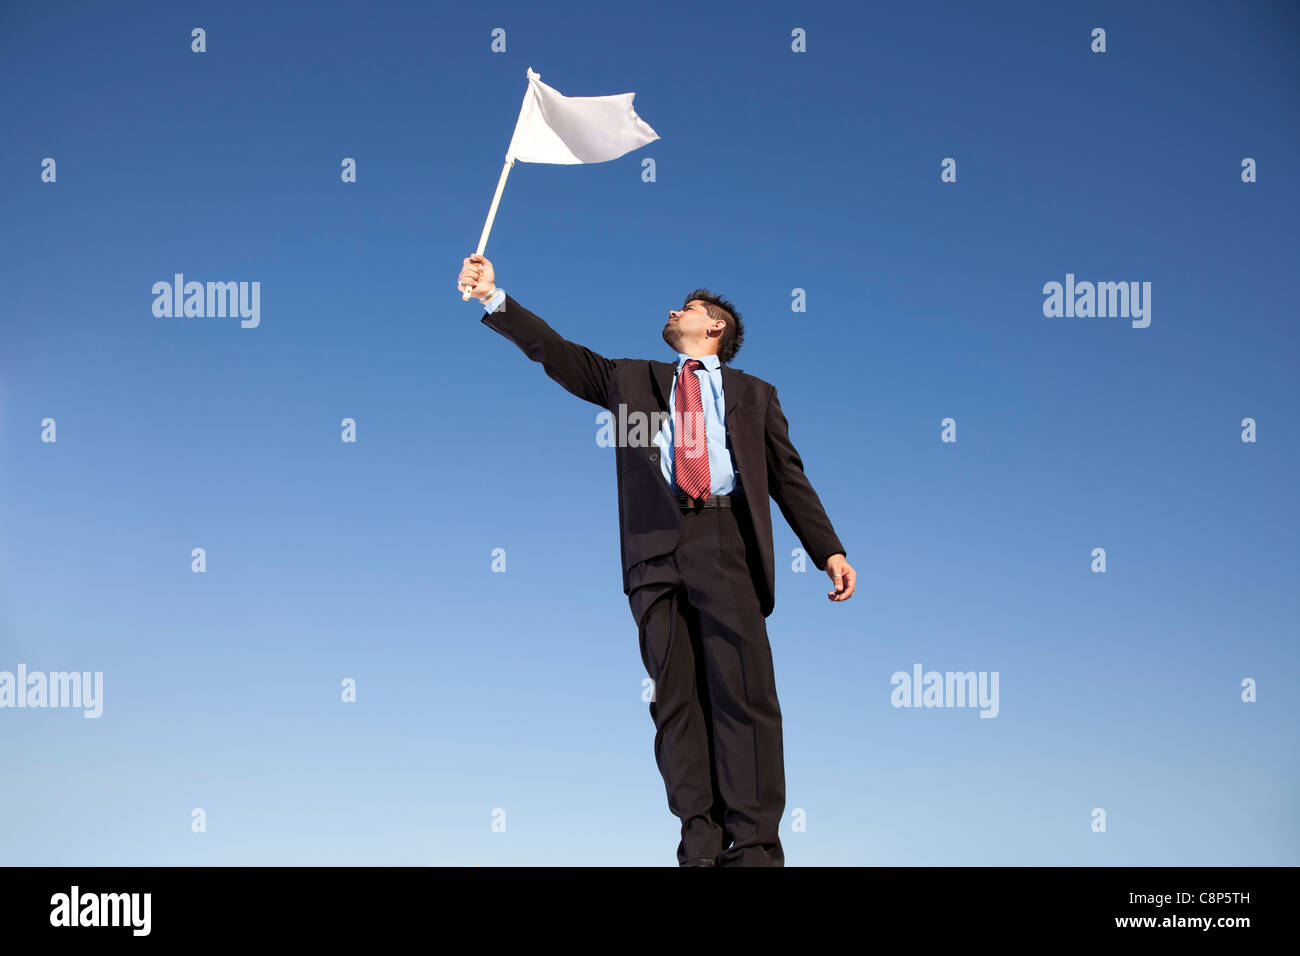 Unternehmer fordern Hingabe hält eine weiße Fahne Stockfoto